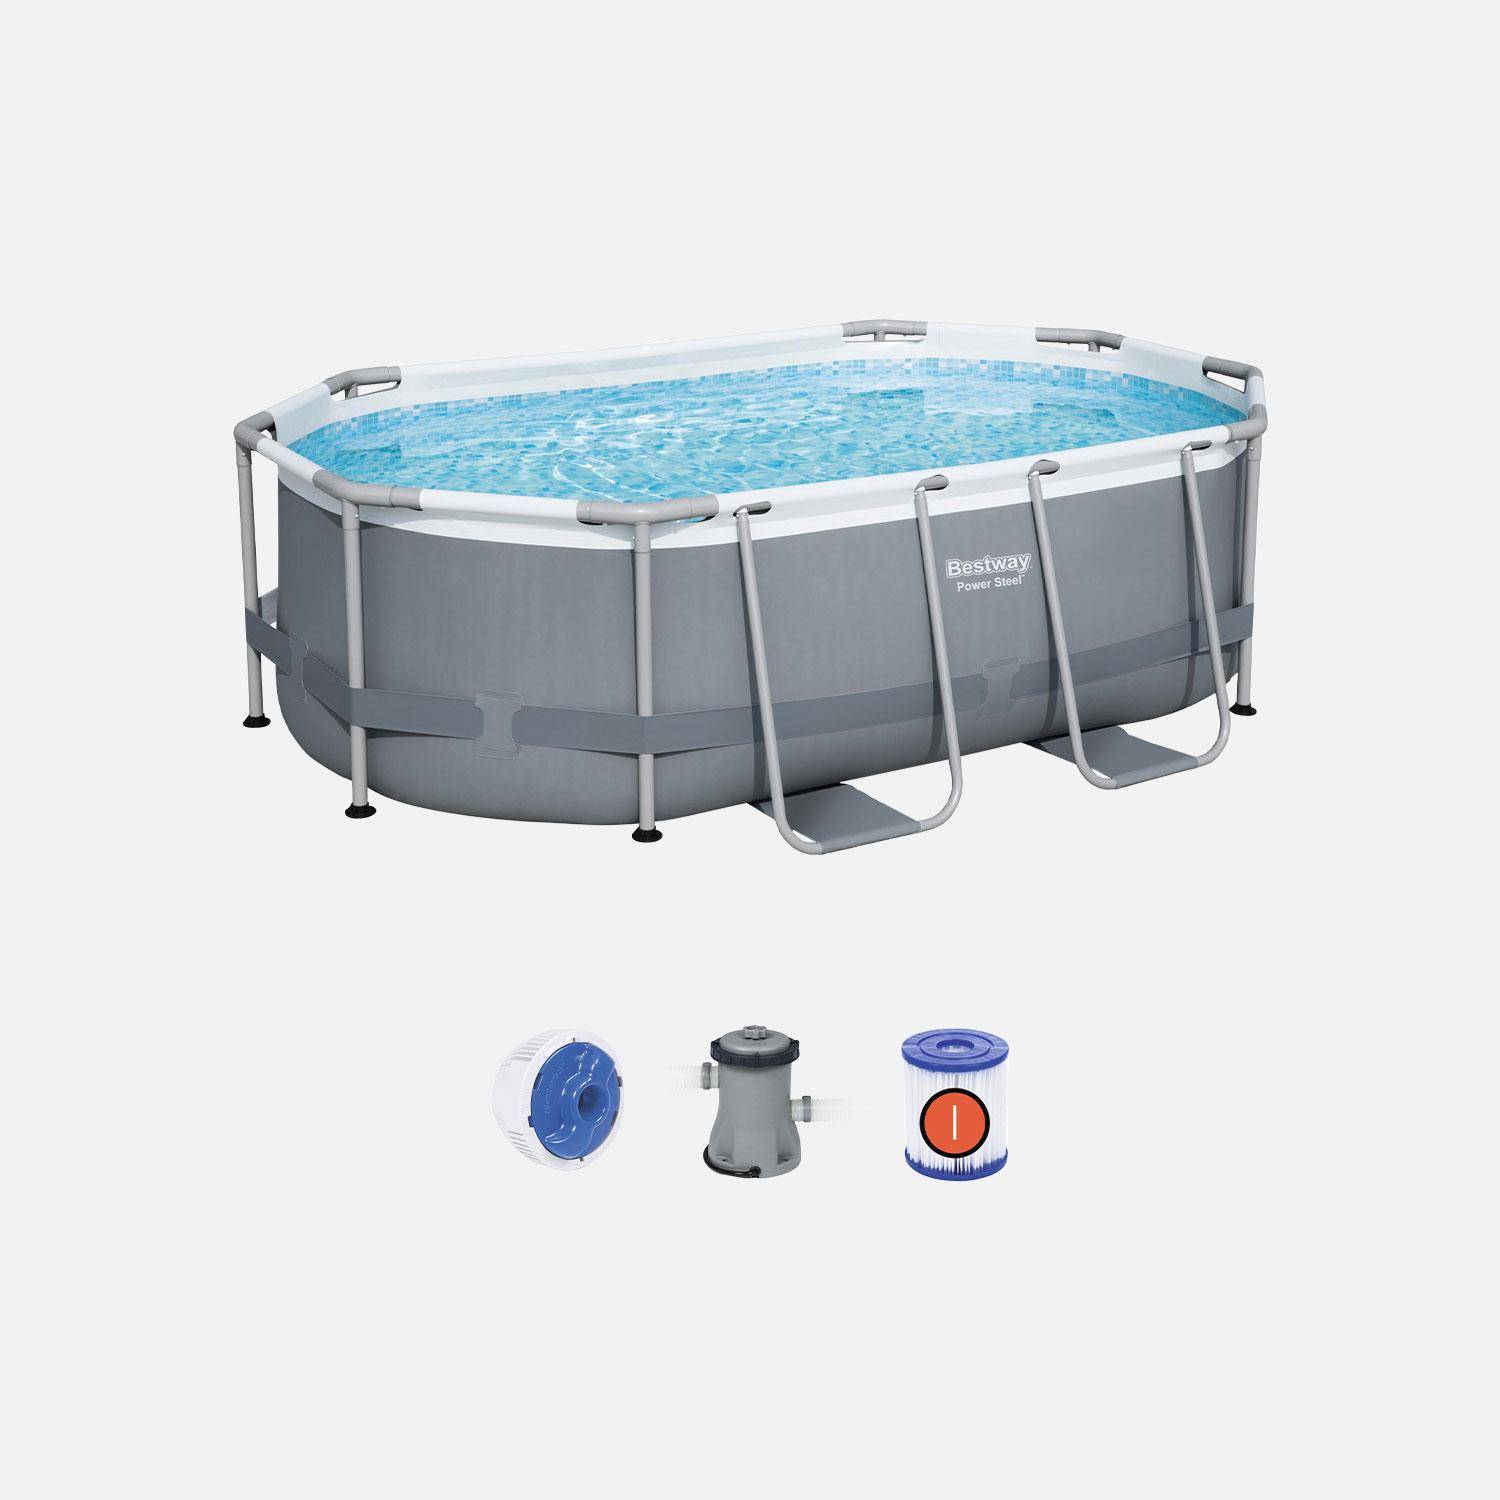 Compleet BESTWAY zwembad – Spinelle grijs – Ovaal frame zwembad 3x2 m, inclusief filterpomp en reparatieset  Photo1